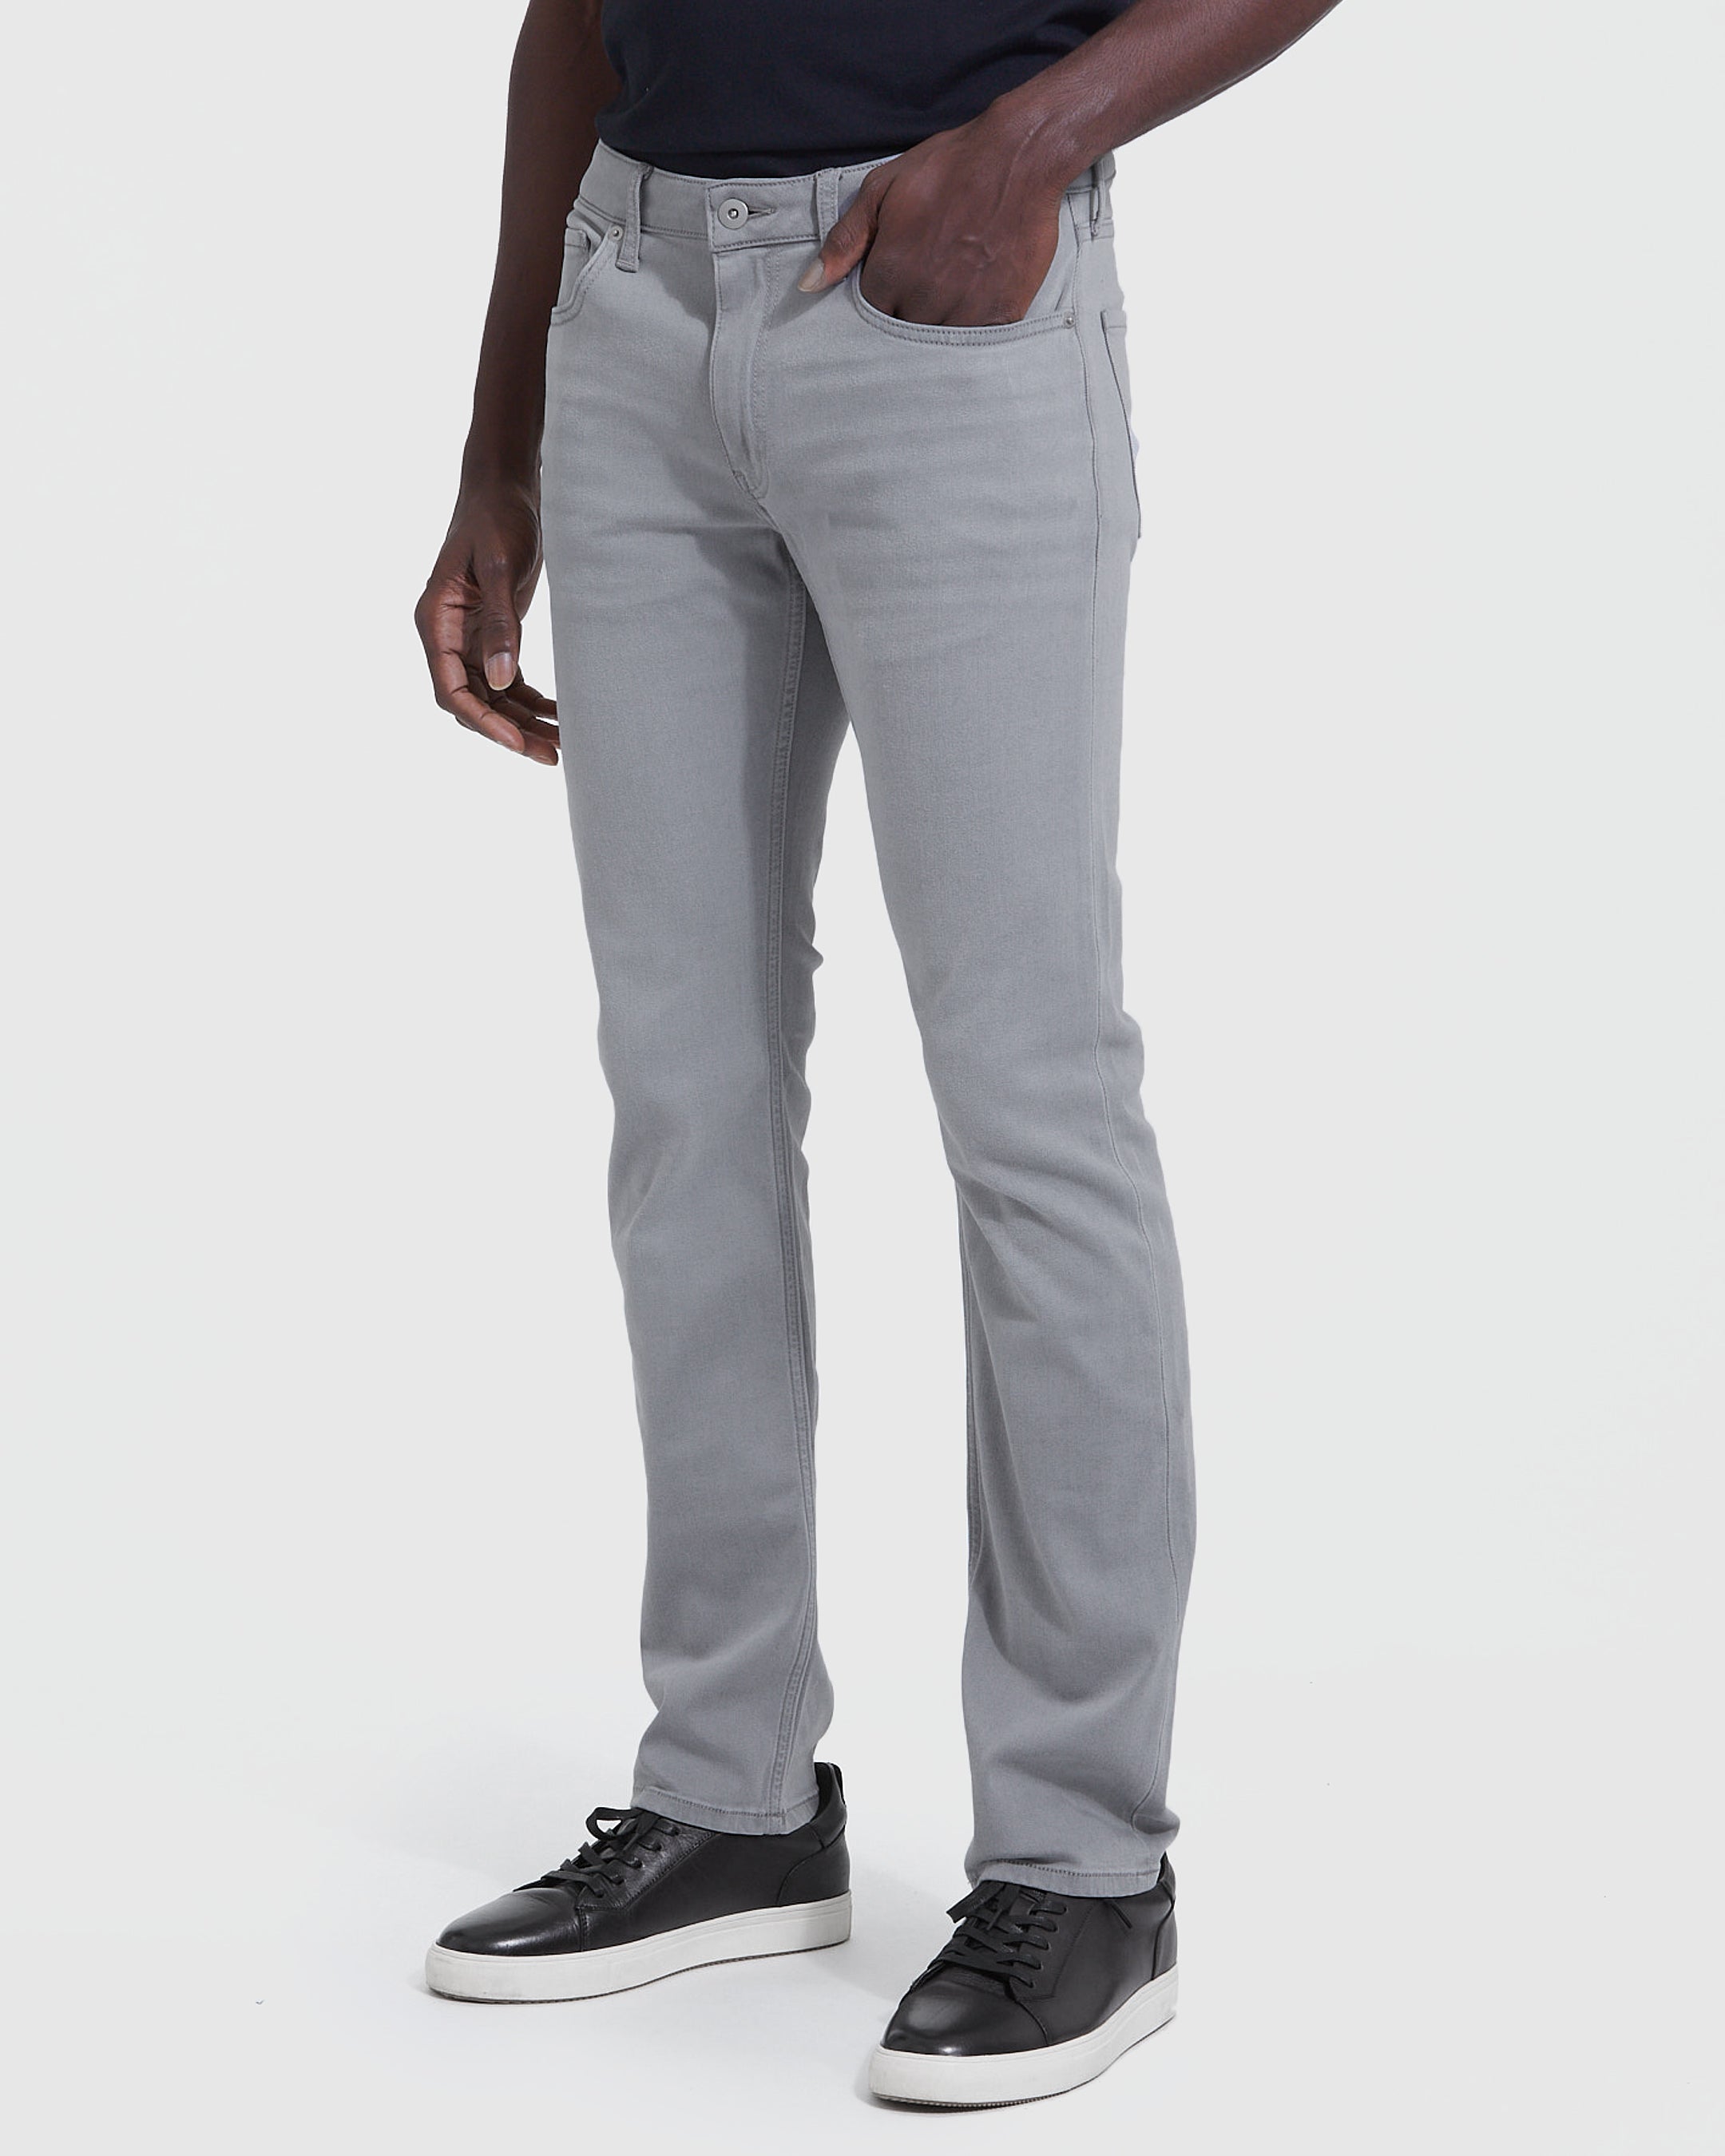 Slim Classic Comfort Wash Fit True – Gray Medium Jeans